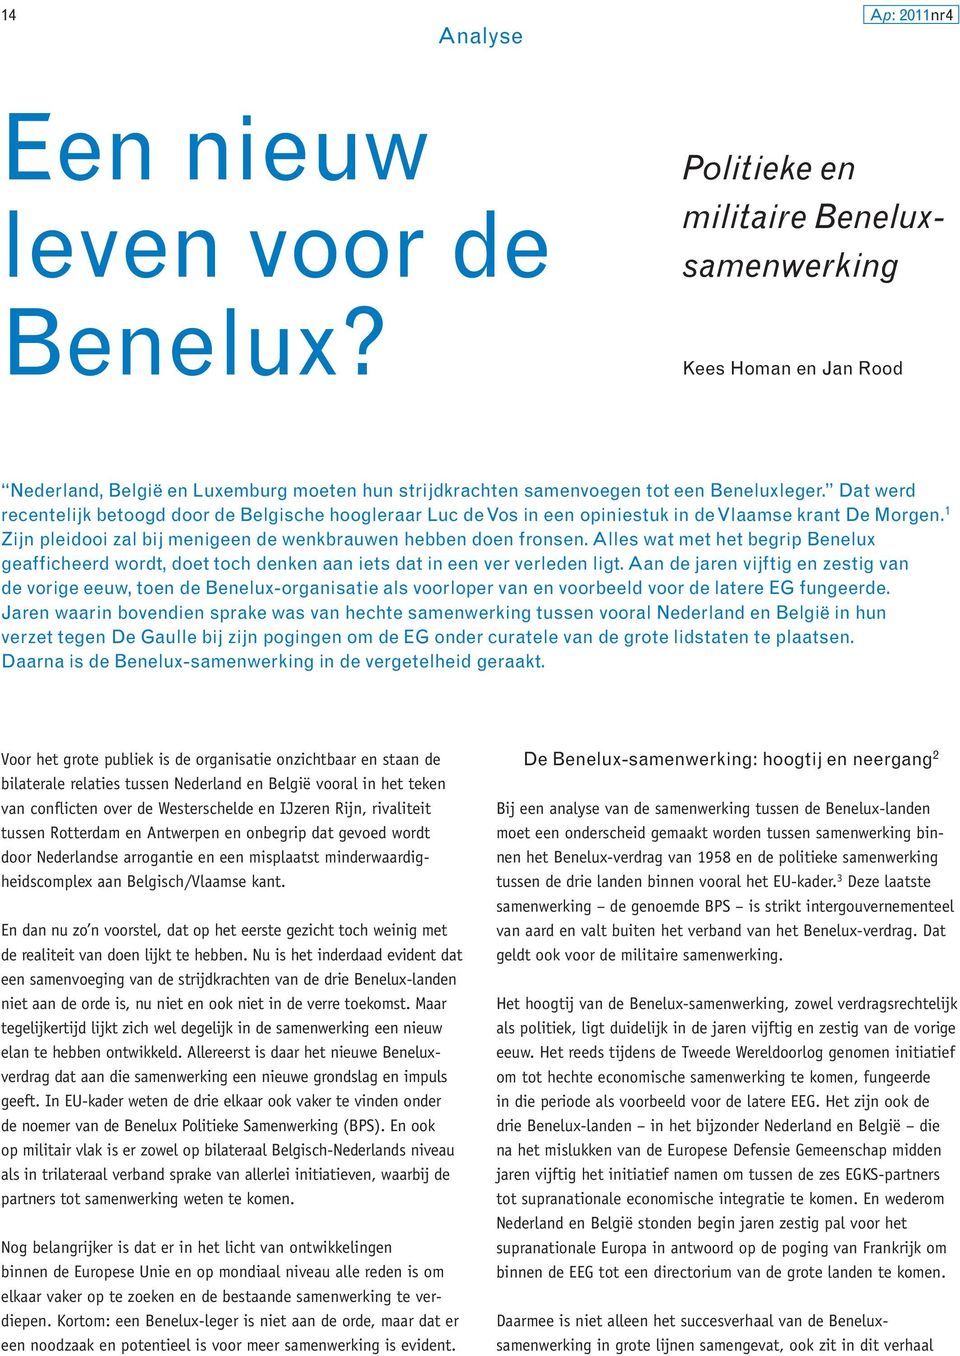 Alles wat met het begrip Benelux geafficheerd wordt, doet toch denken aan iets dat in een ver verleden ligt.